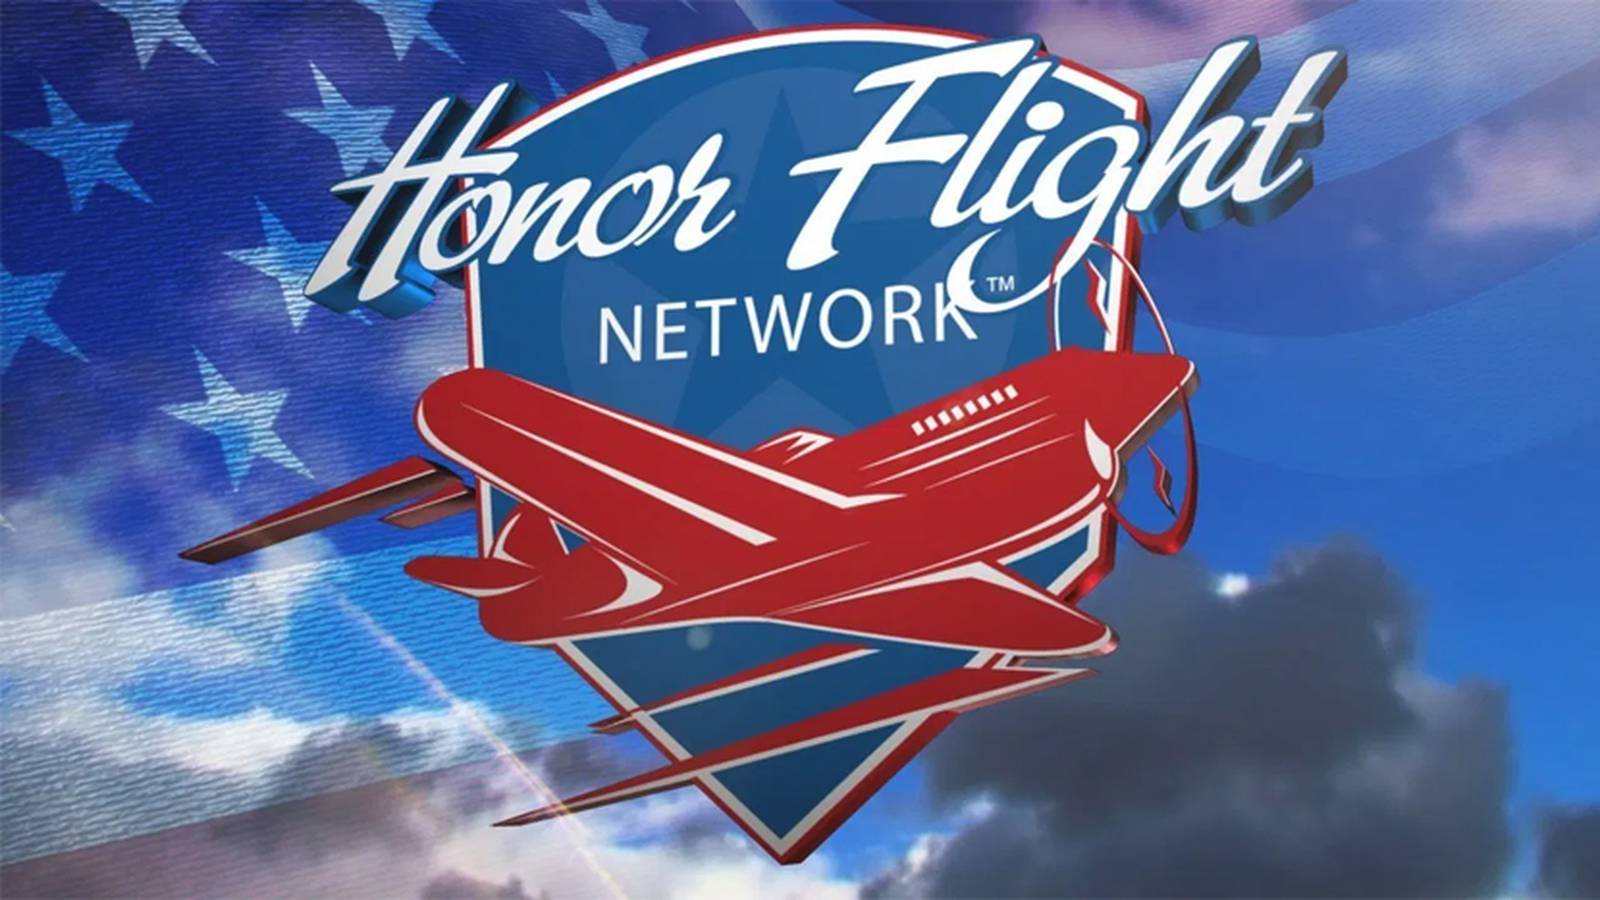 Honor Flight Network K92.3